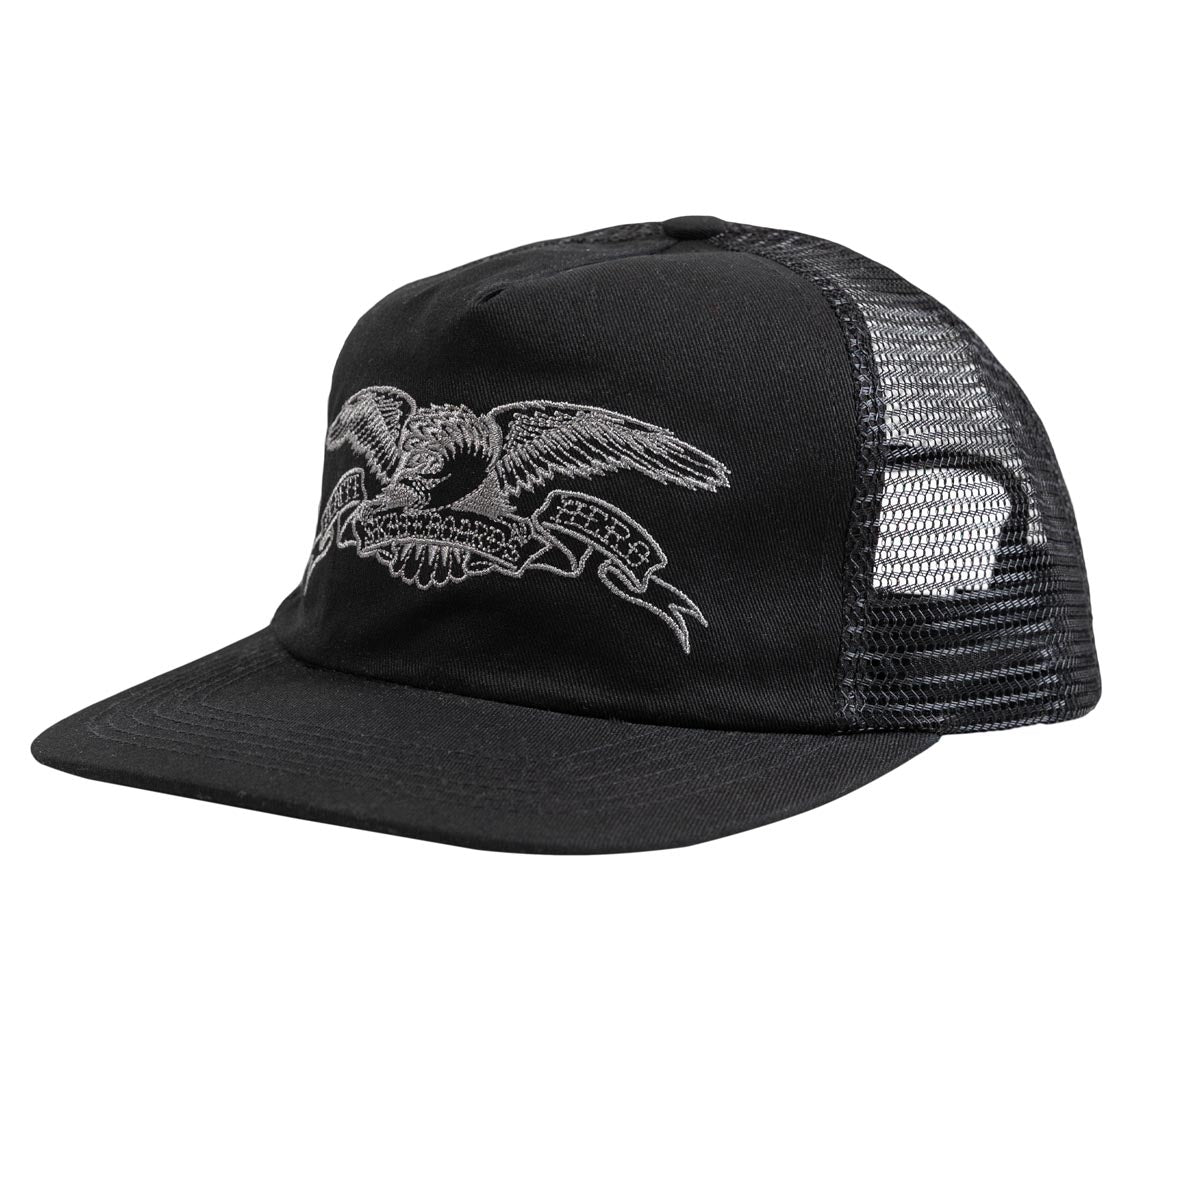 Anti-Hero Basic Eagle Snapback Hat - Black/Charcoal image 1